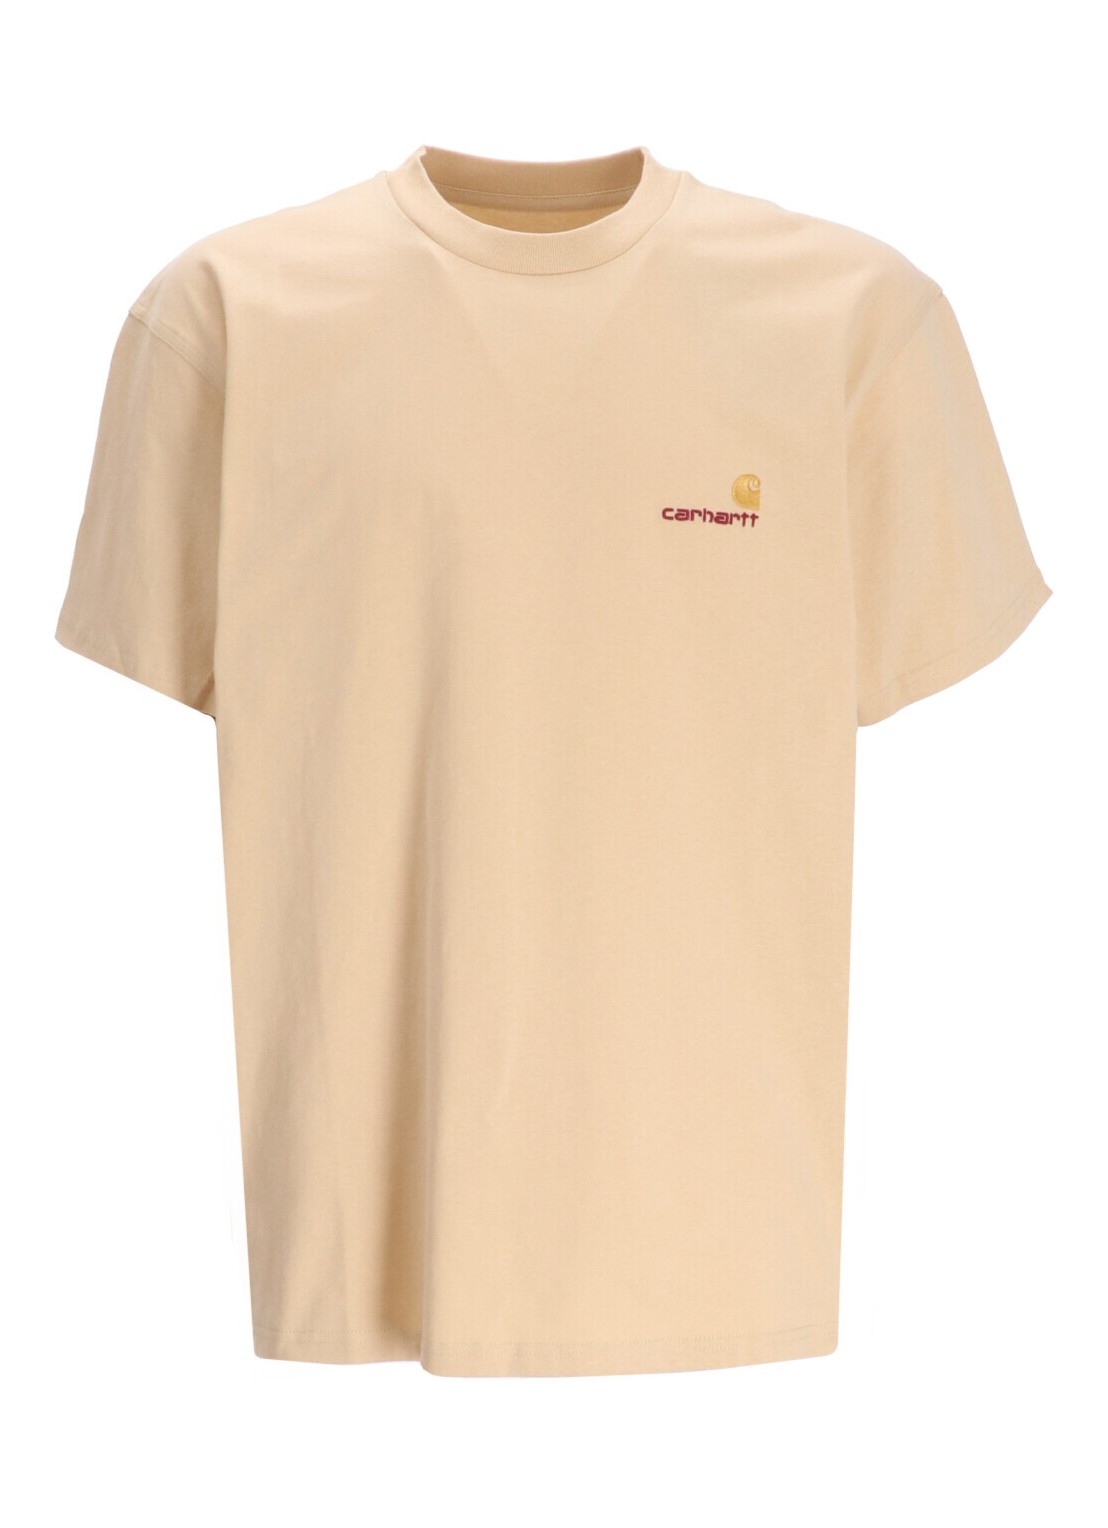 Camiseta carhartt t-shirt man s/s american script t-shir i029956 1yrxx talla beige
 